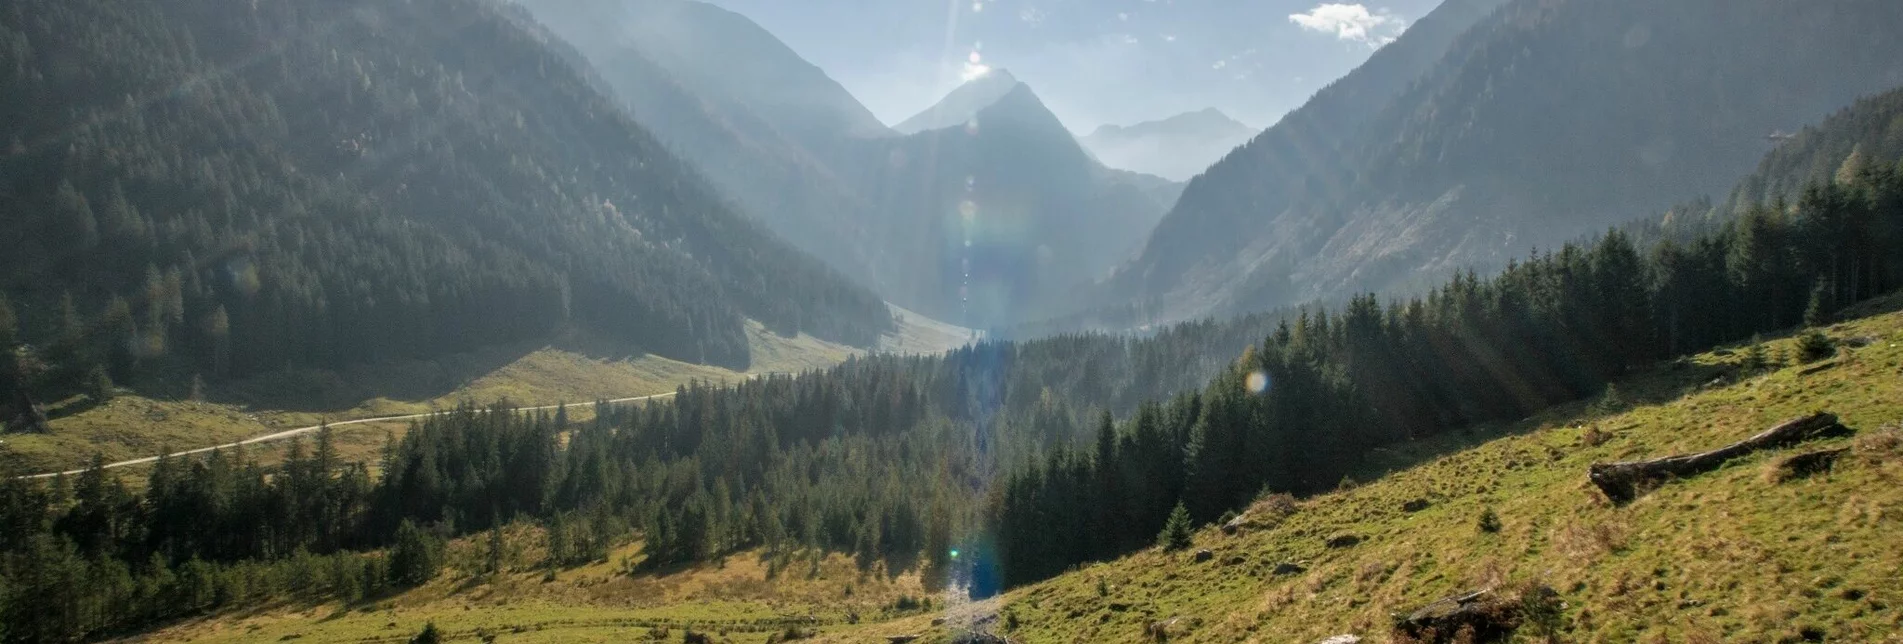 Mountain Hike Summit Tour to the Knallstein - Touren-Impression #1 | © TVB Schladming-Dachstein